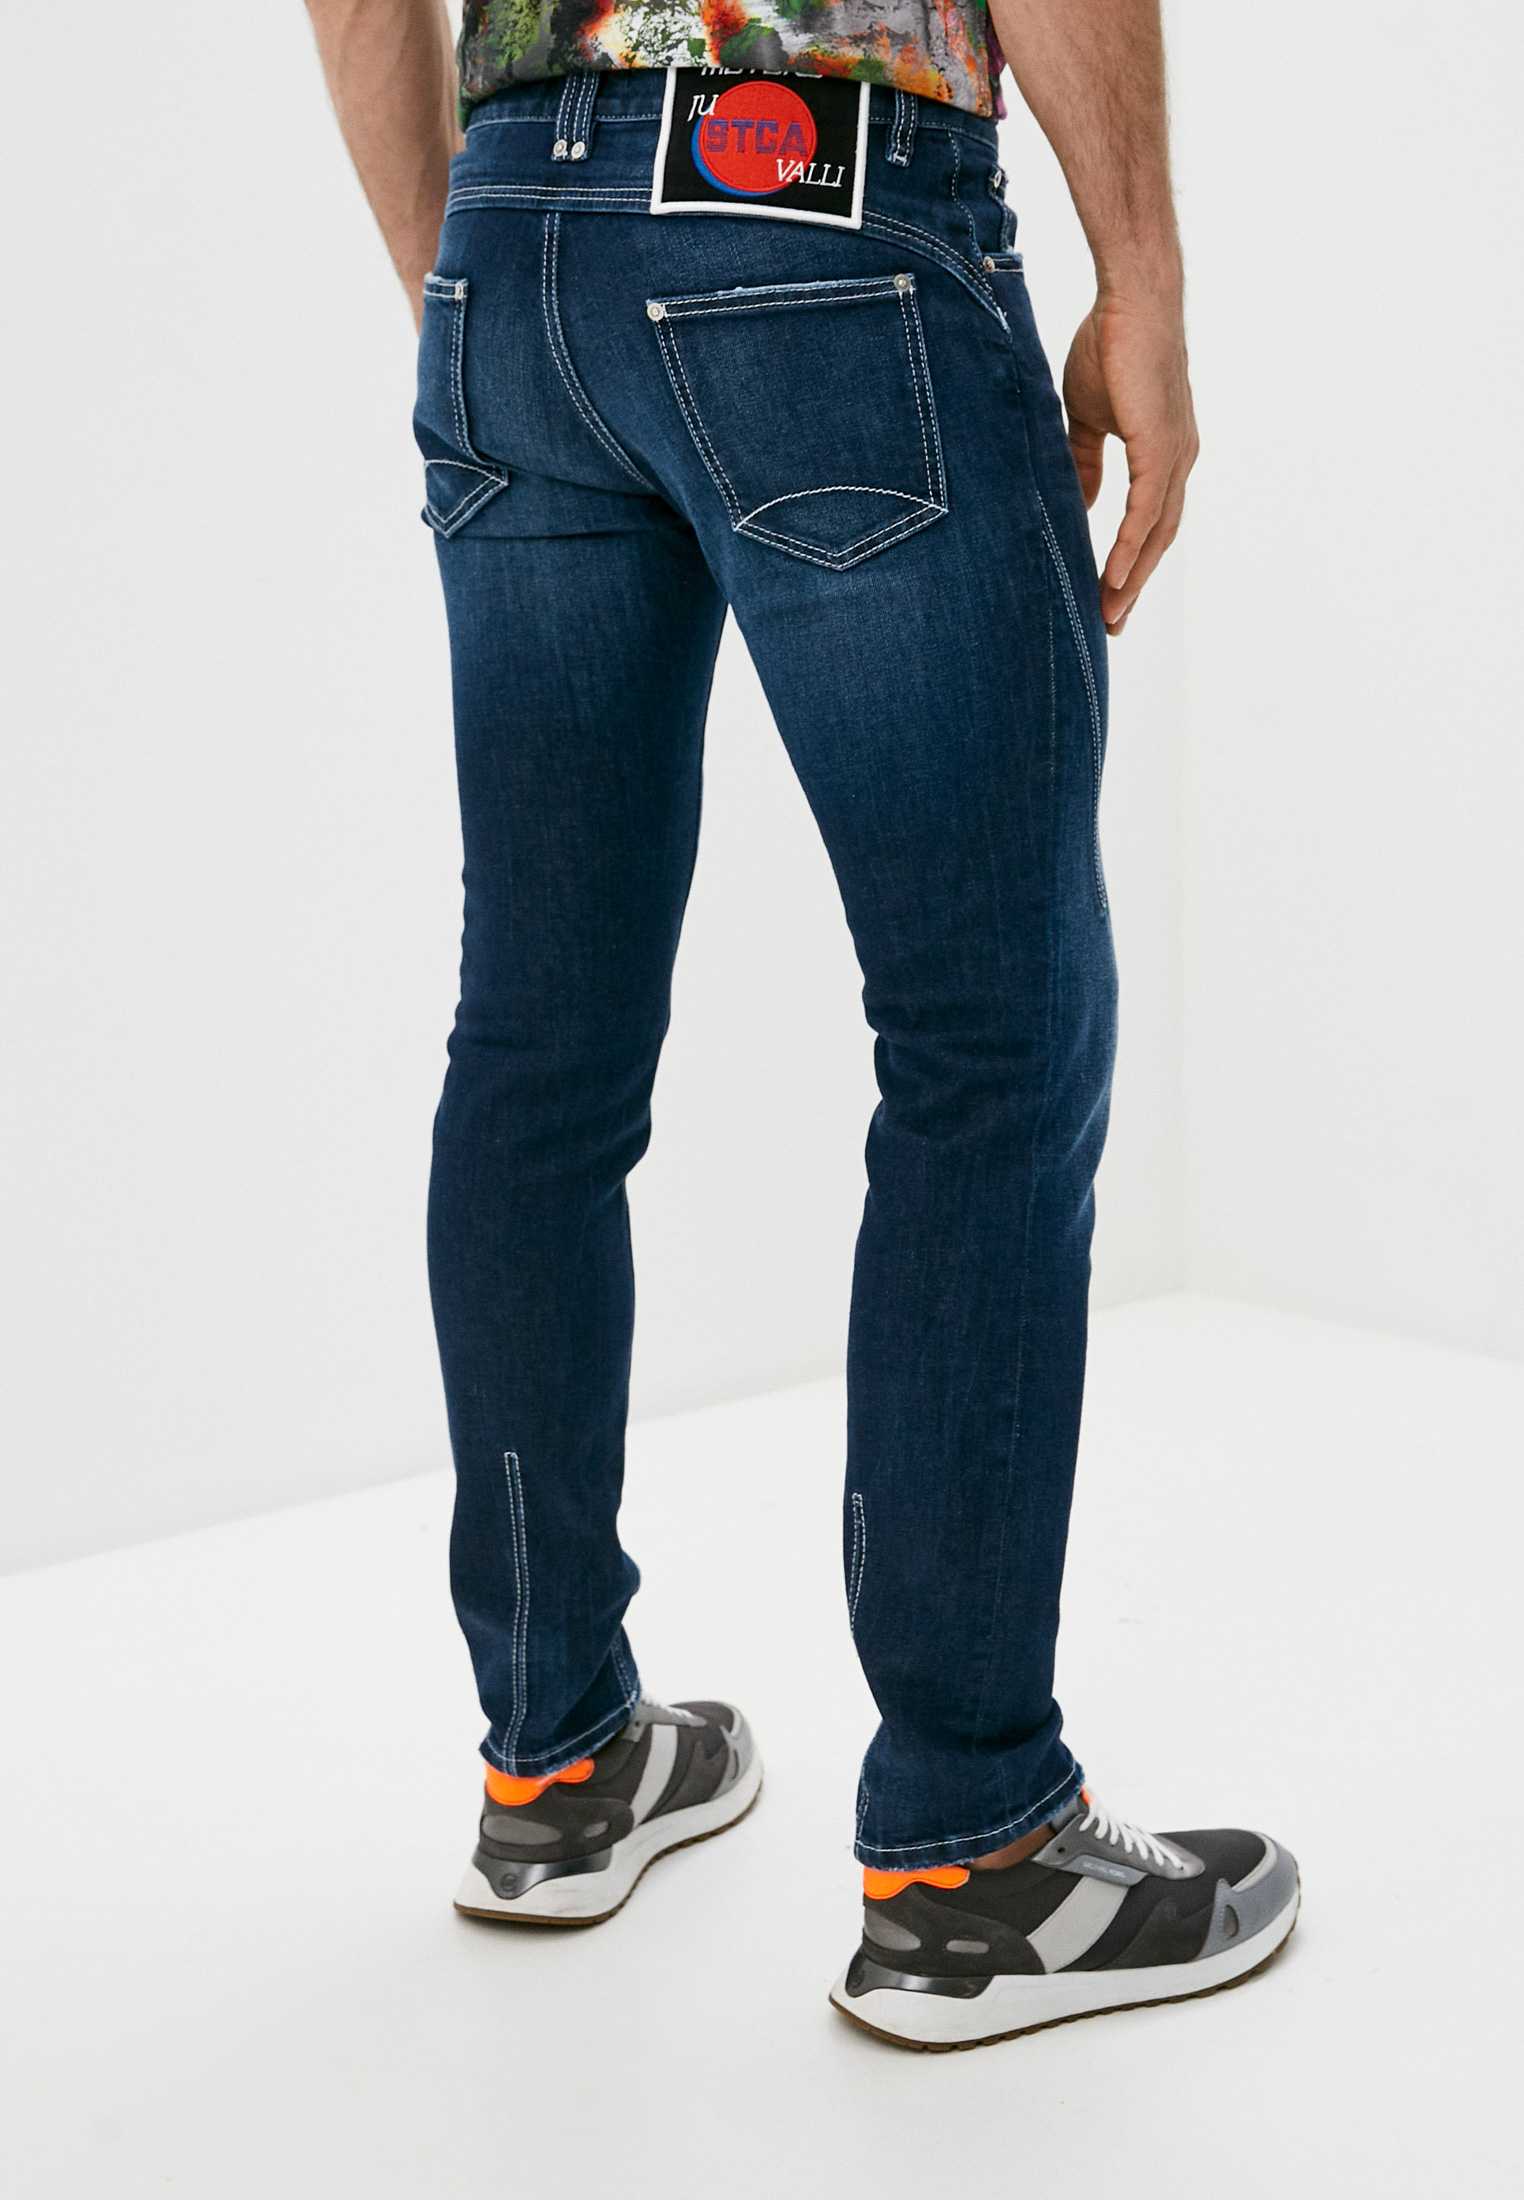 Мужские прямые джинсы Just Cavalli (Джаст Кавалли) S01LA0139N31873: изображение 4